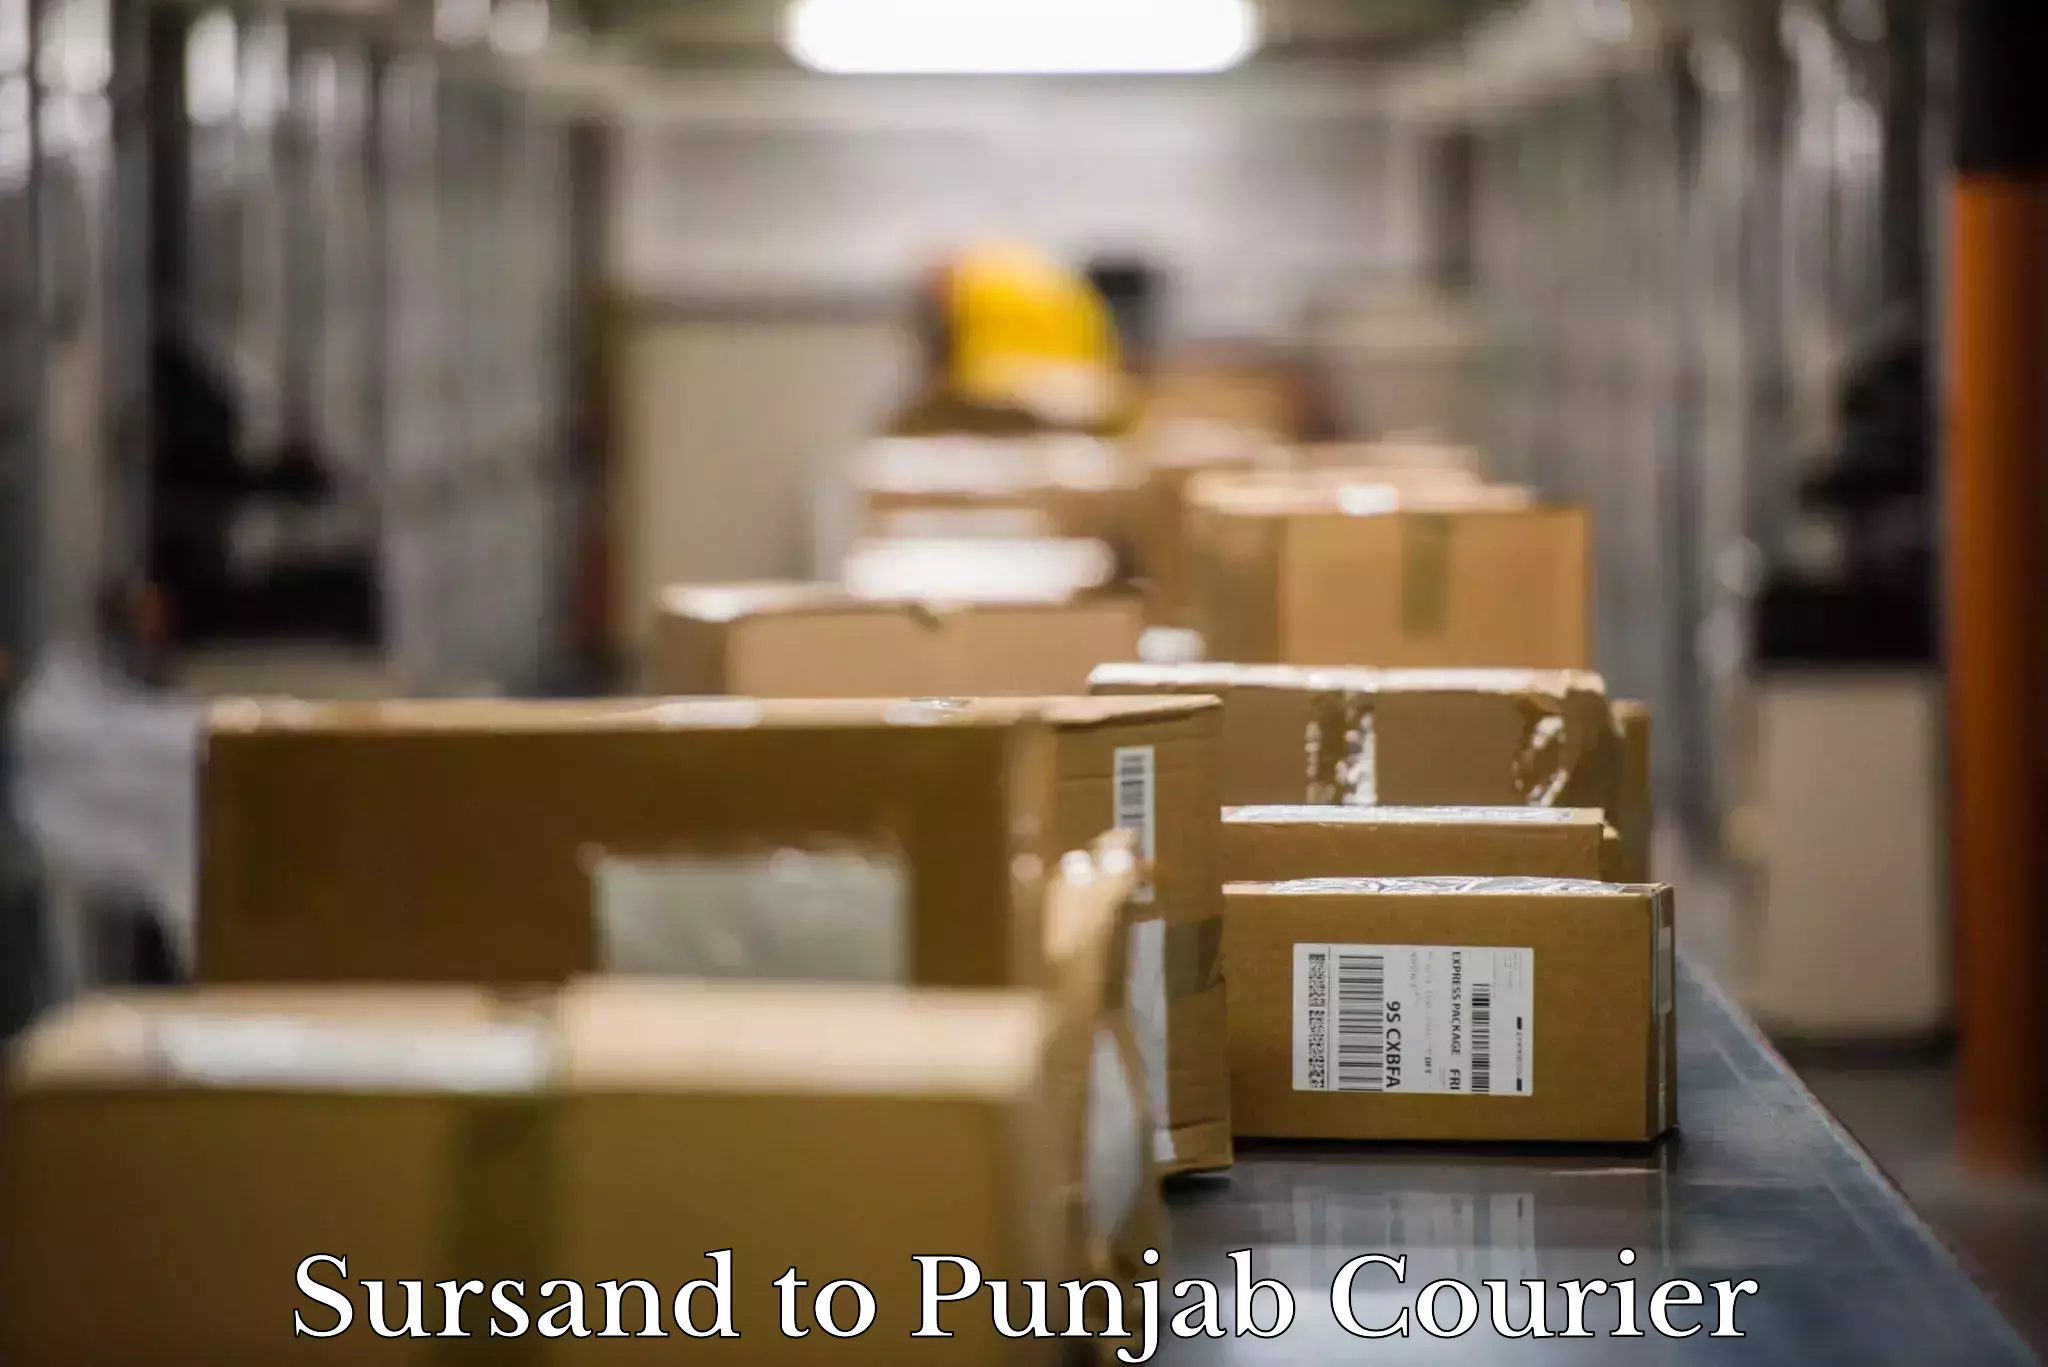 Professional moving company Sursand to Central University of Punjab Bathinda